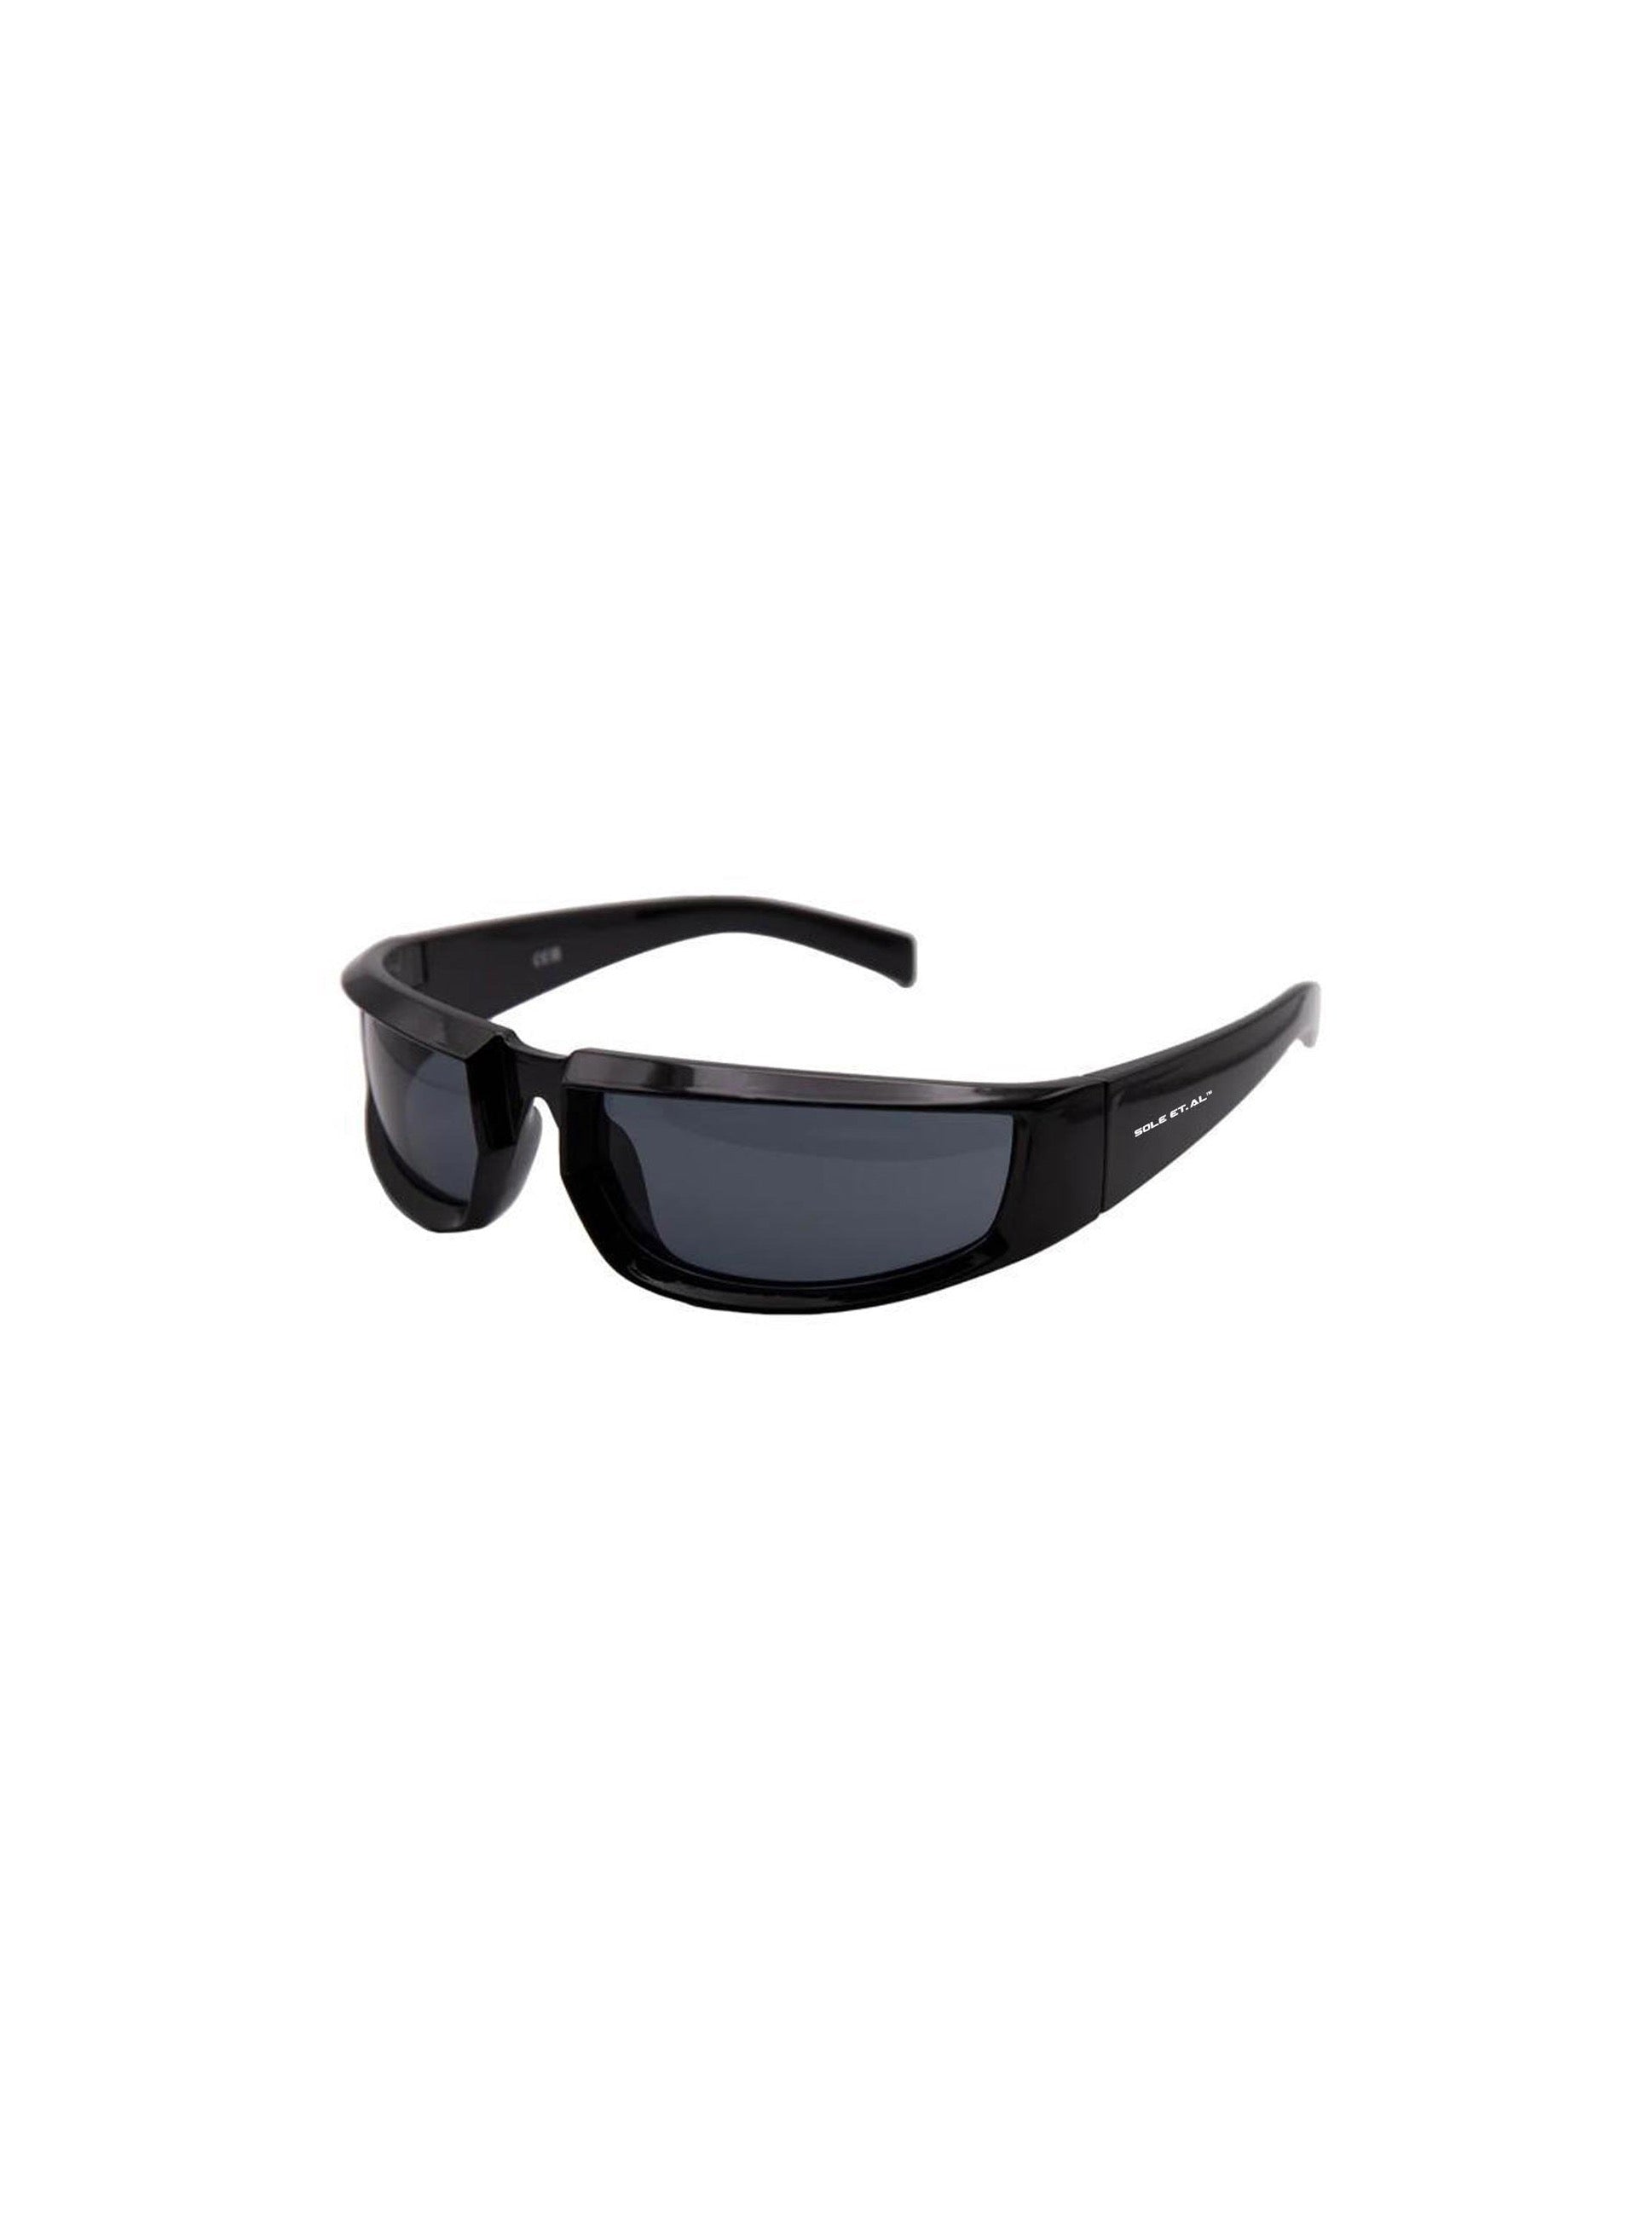 Sole et. Al Arc Racer Glasses : Black